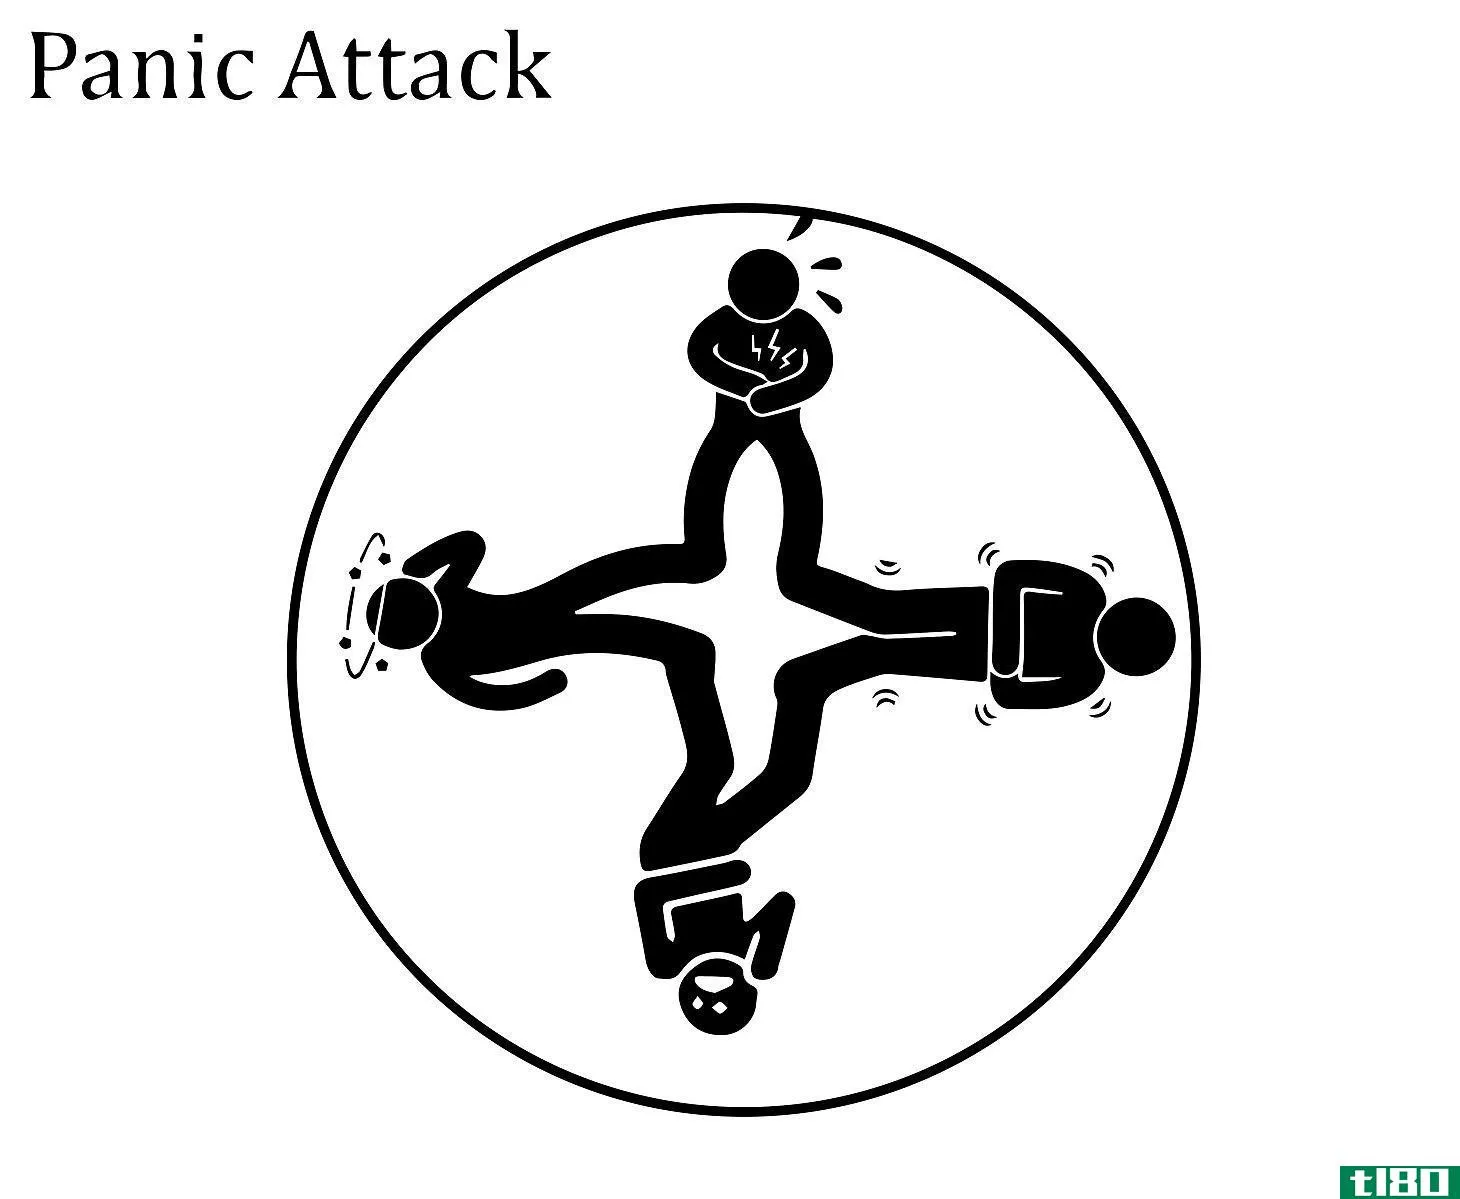 癫痫发作(a seizure)和惊恐发作(a panic attack)的区别